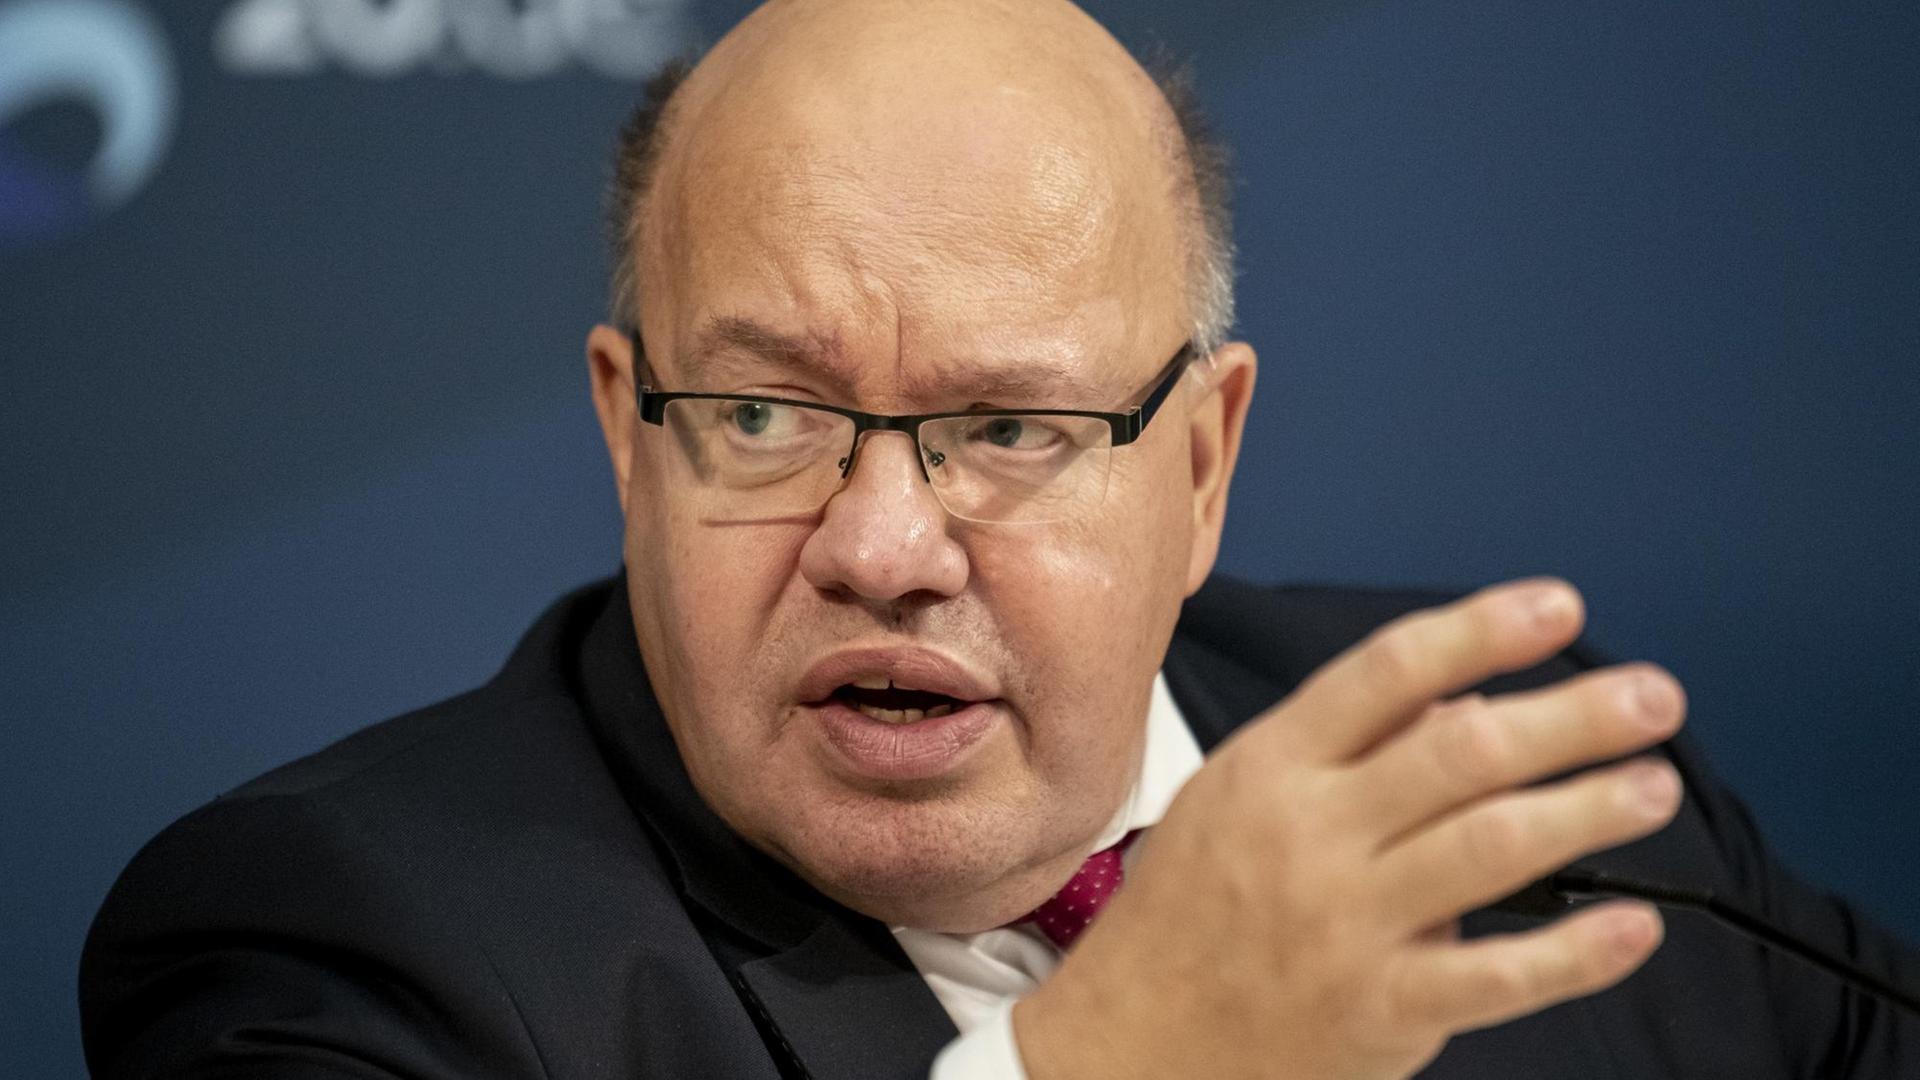 Wirtschaftsminister Altmaier bei einem Pressetermin Anfang November 2020